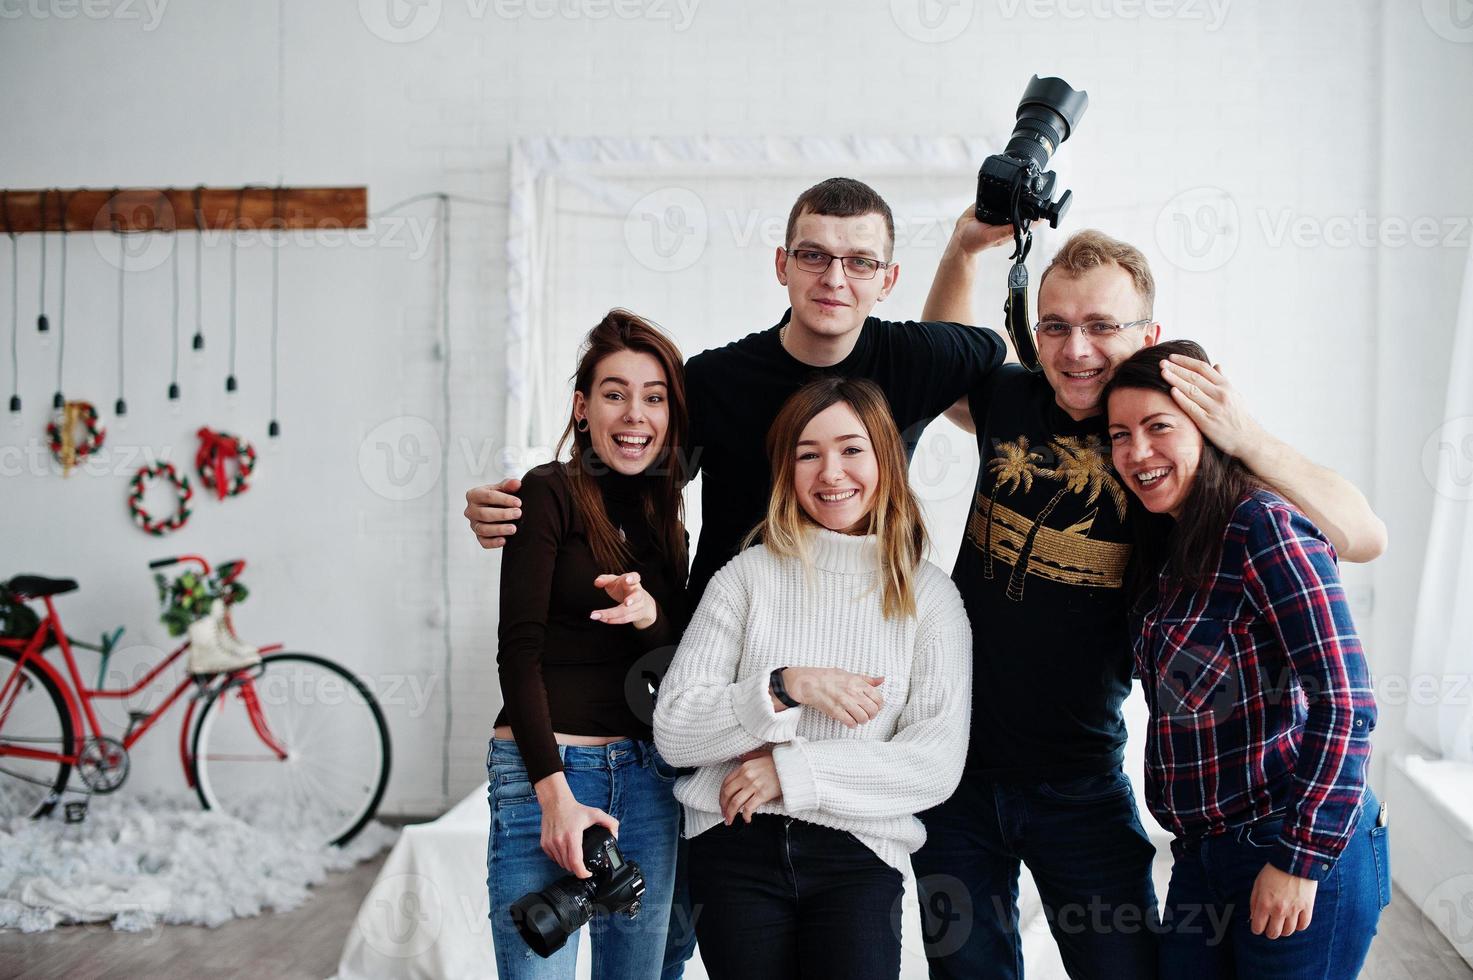 gruppo di cinque persone, amici fotografi e designer in studio dopo una dura giornata di lavoro. sono felici e ridenti. foto